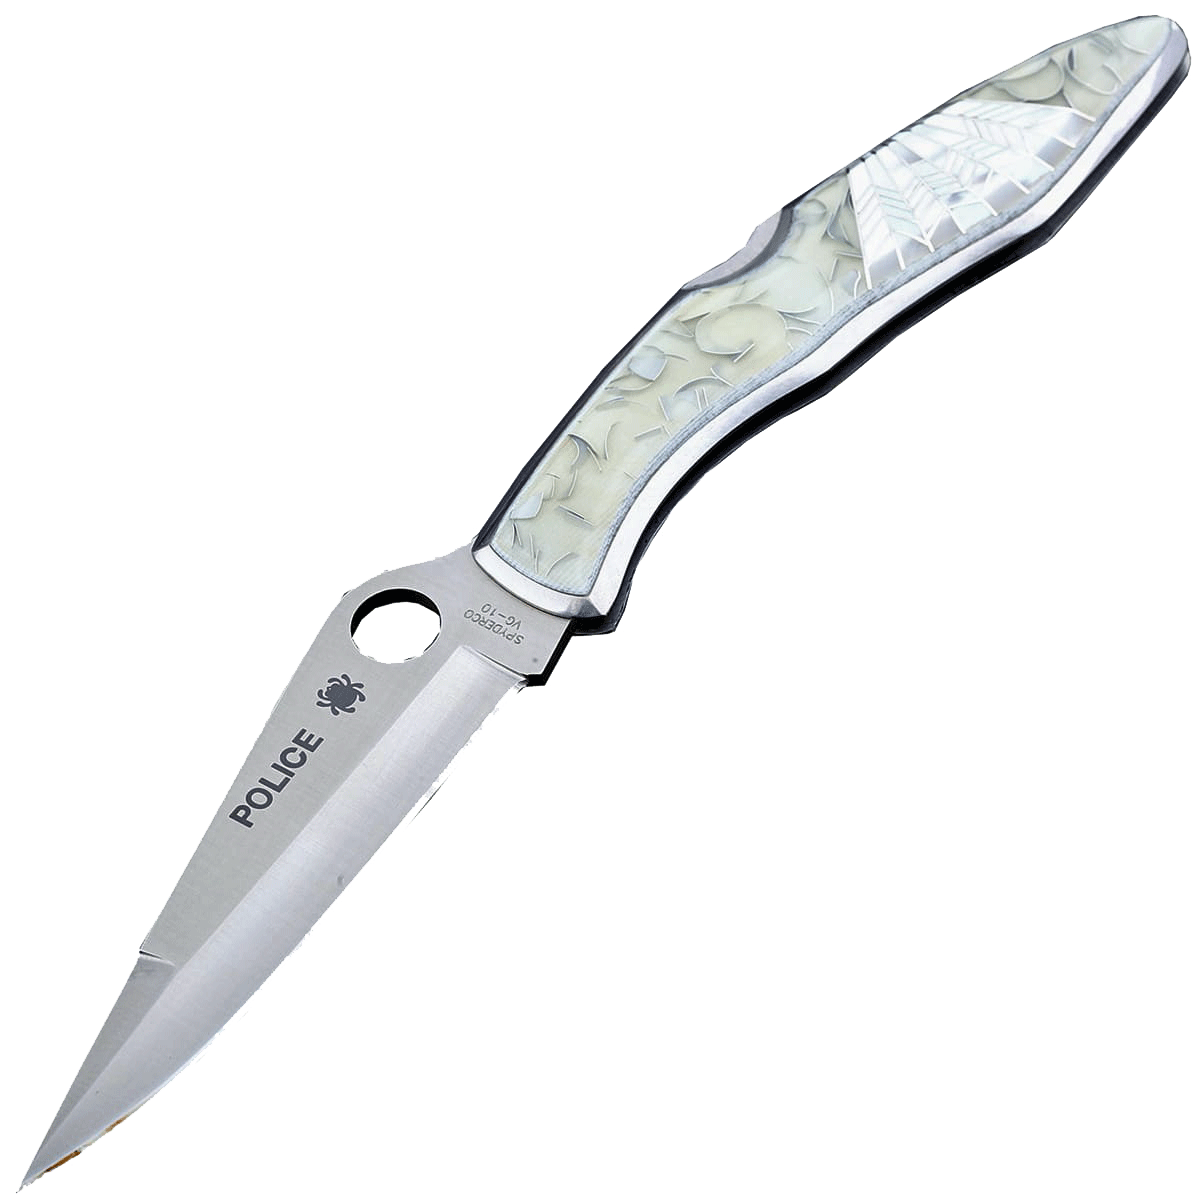 Складной нож Santa Fe Spyderco Police, сталь VG-10, рукоять сталь с накладкой из акрила/перламутра - фото 1